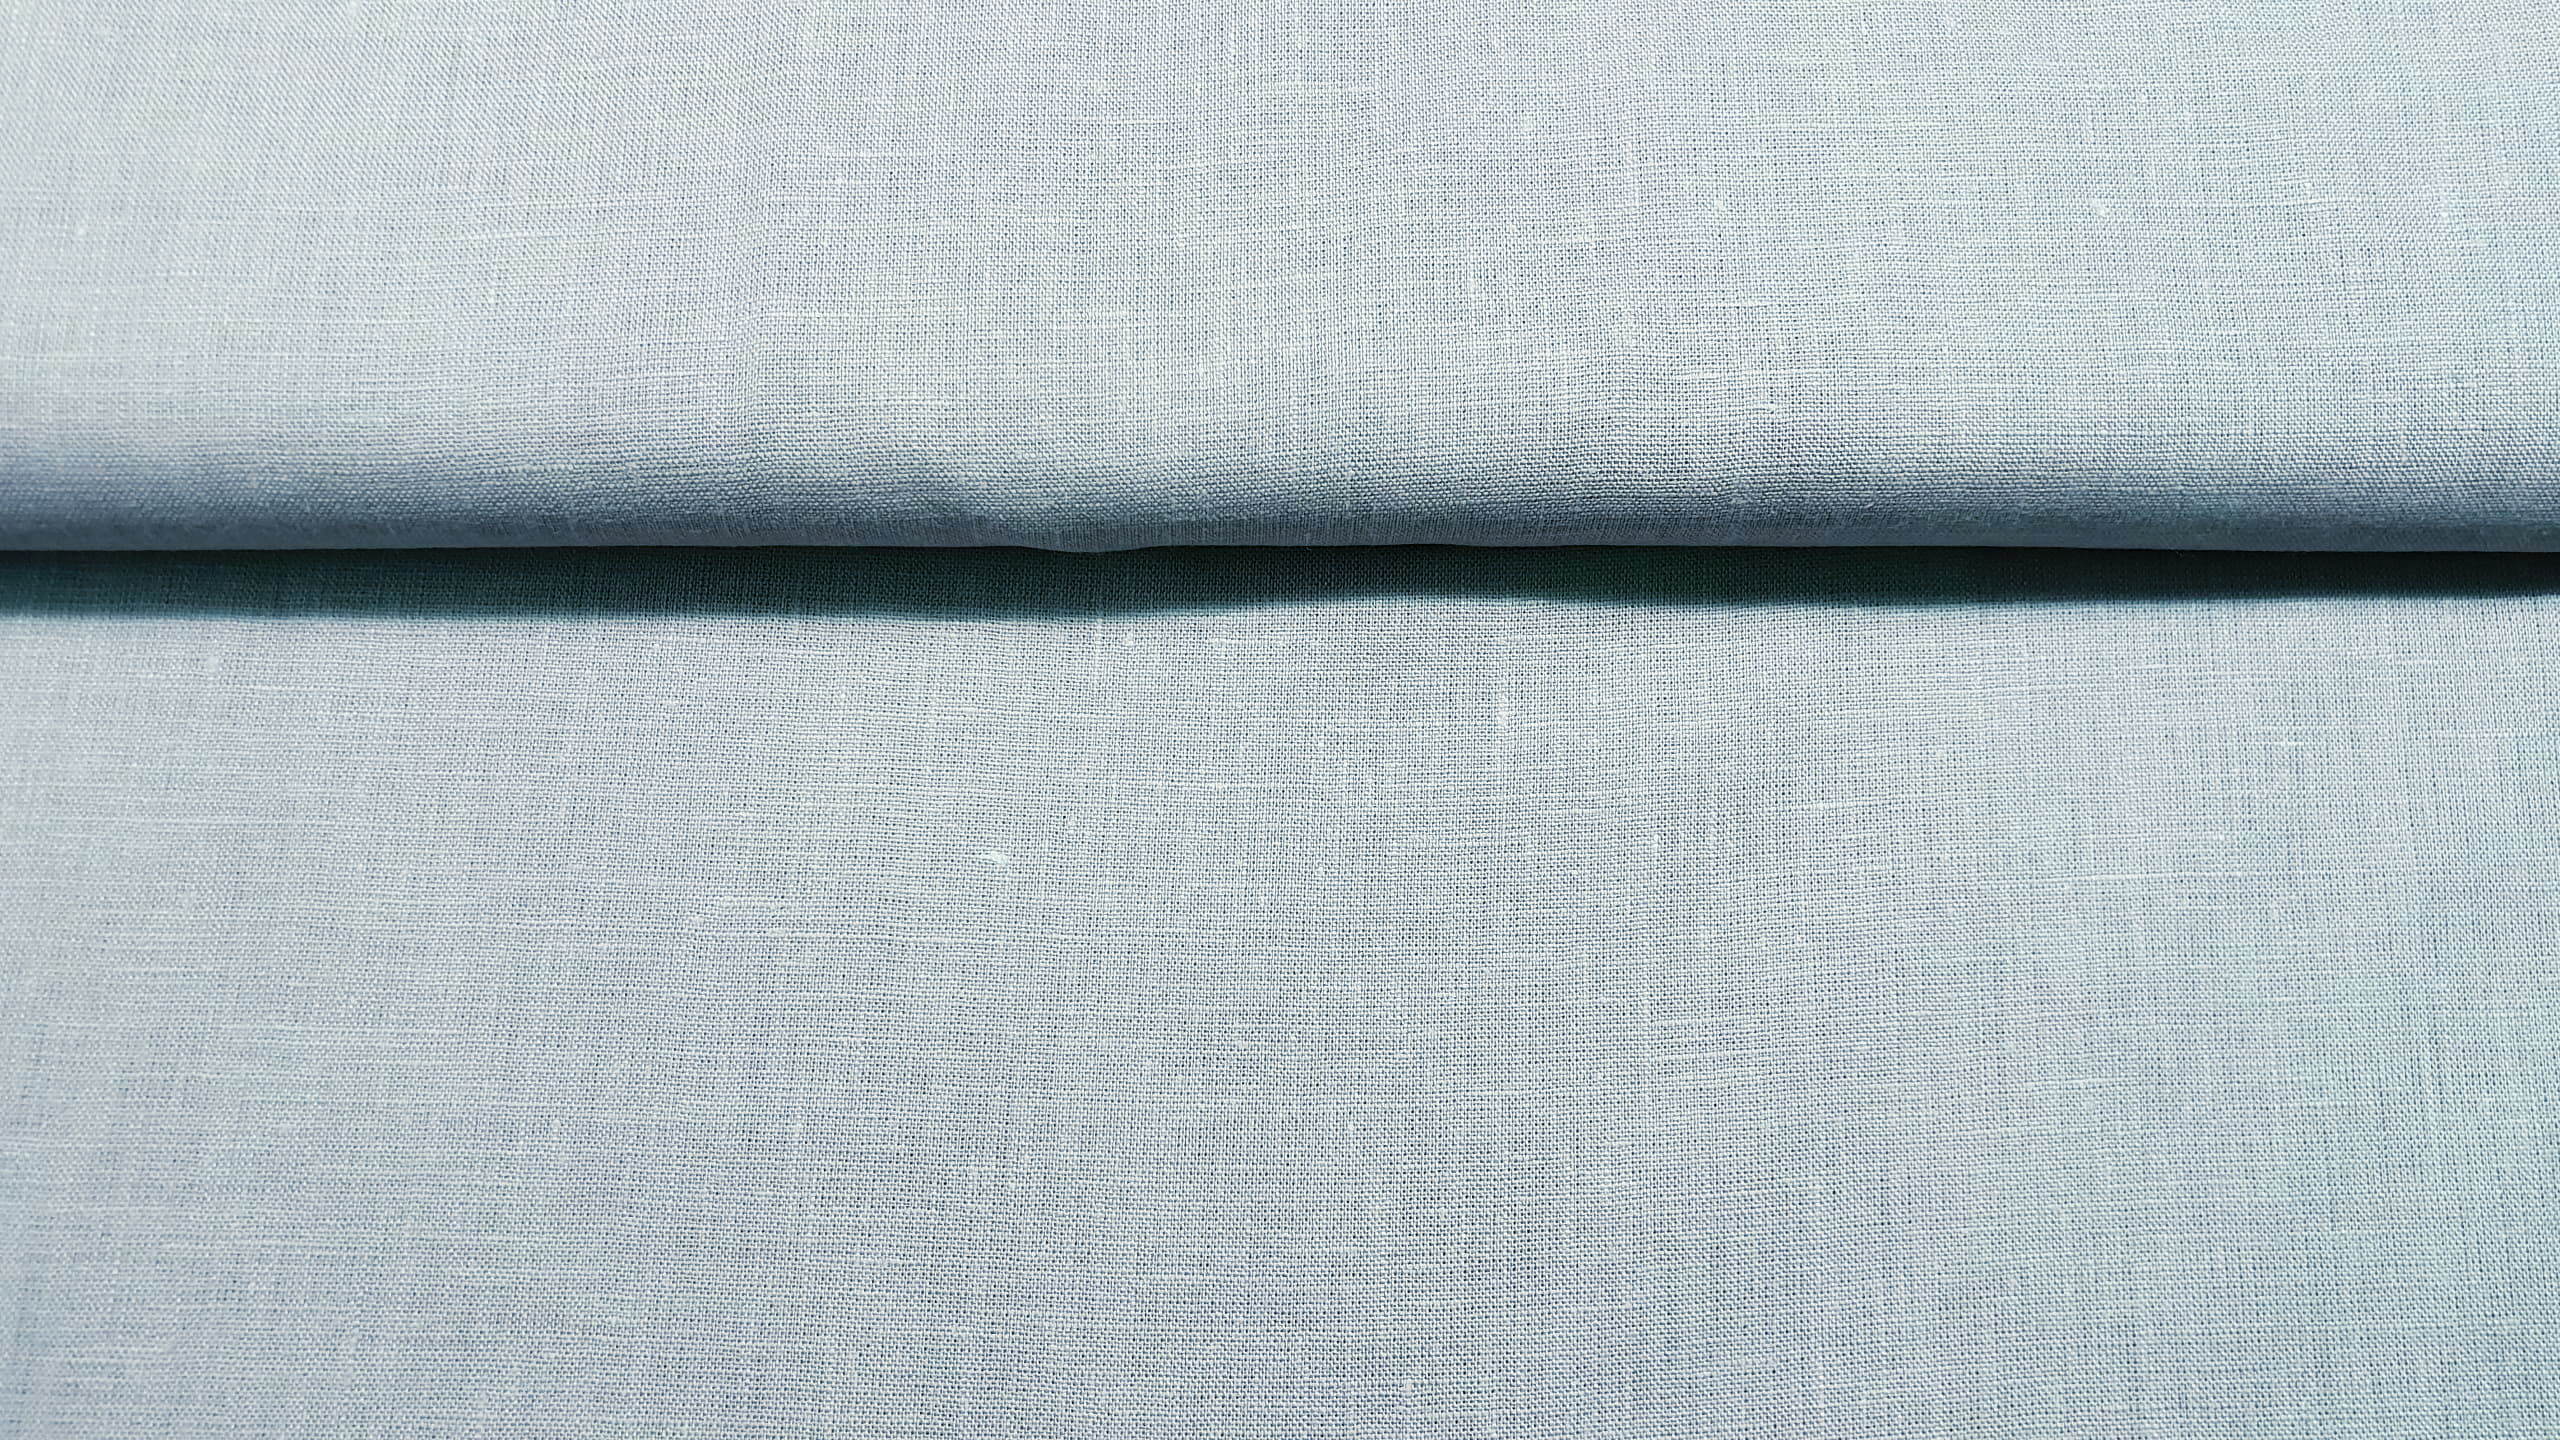 WIDE Medium prewashed linen 150g-baby blue